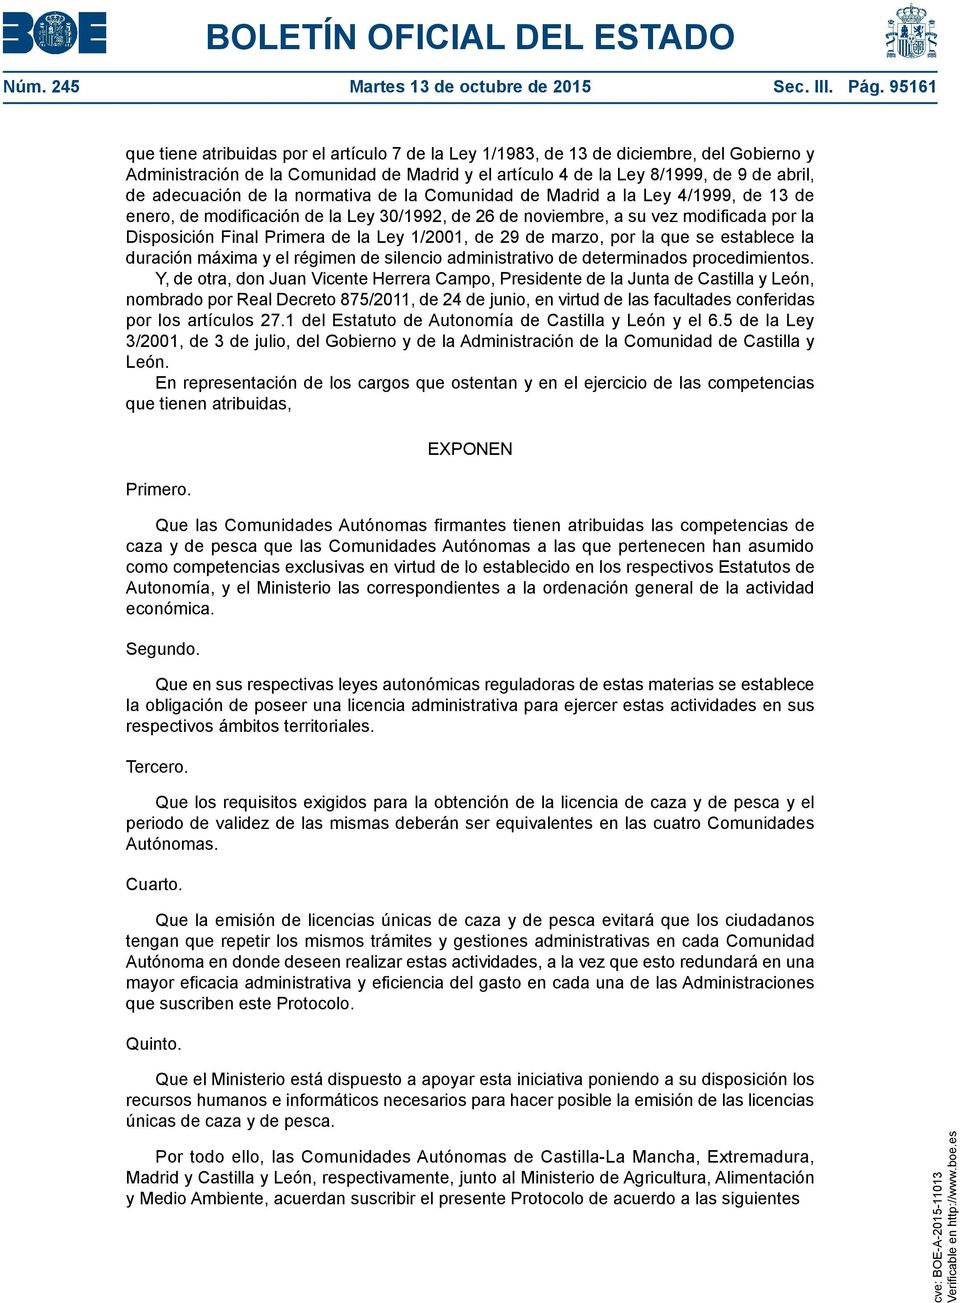 adecuación de la normativa de la Comunidad de Madrid a la Ley 4/1999, de 13 de enero, de modificación de la Ley 30/1992, de 26 de noviembre, a su vez modificada por la Disposición Final Primera de la